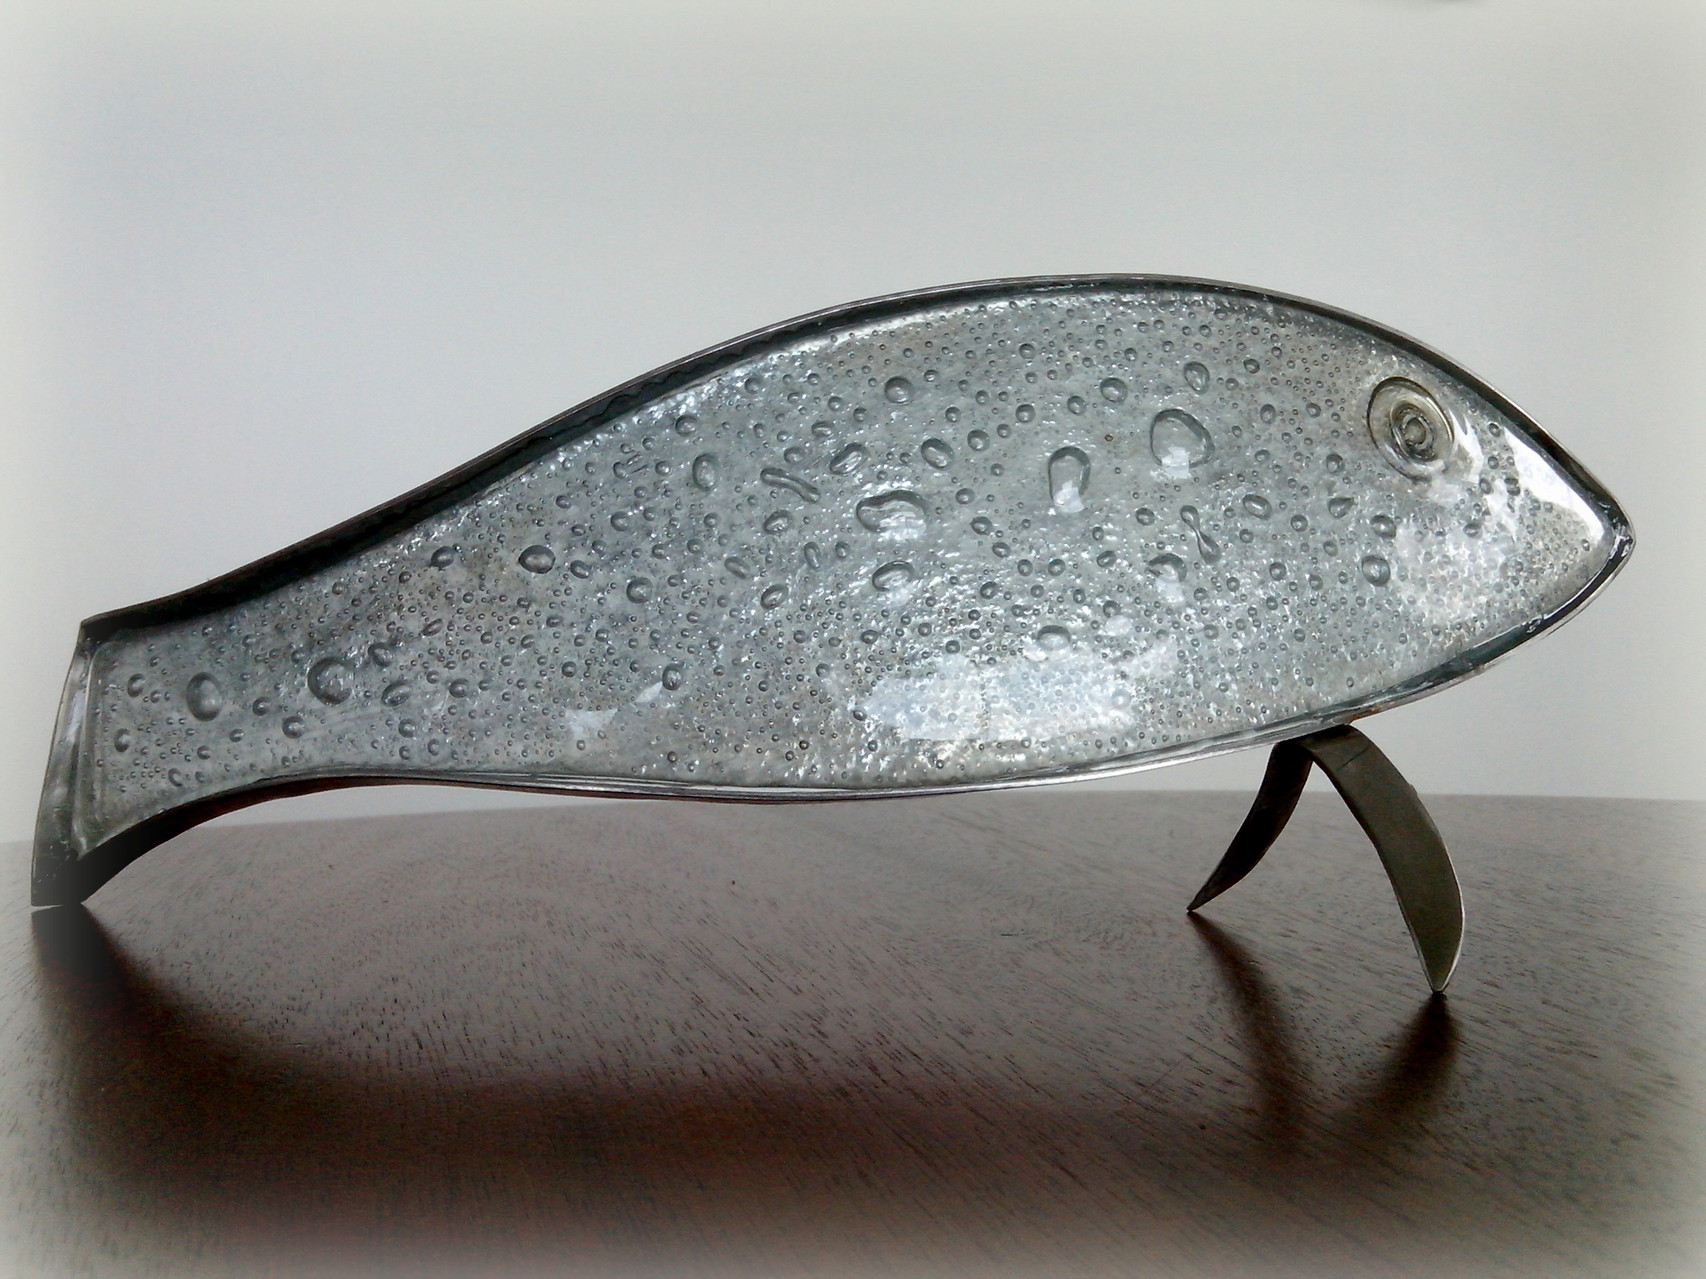 poisson argenté:35 x 13 cm inox, fusing bullé, argenture